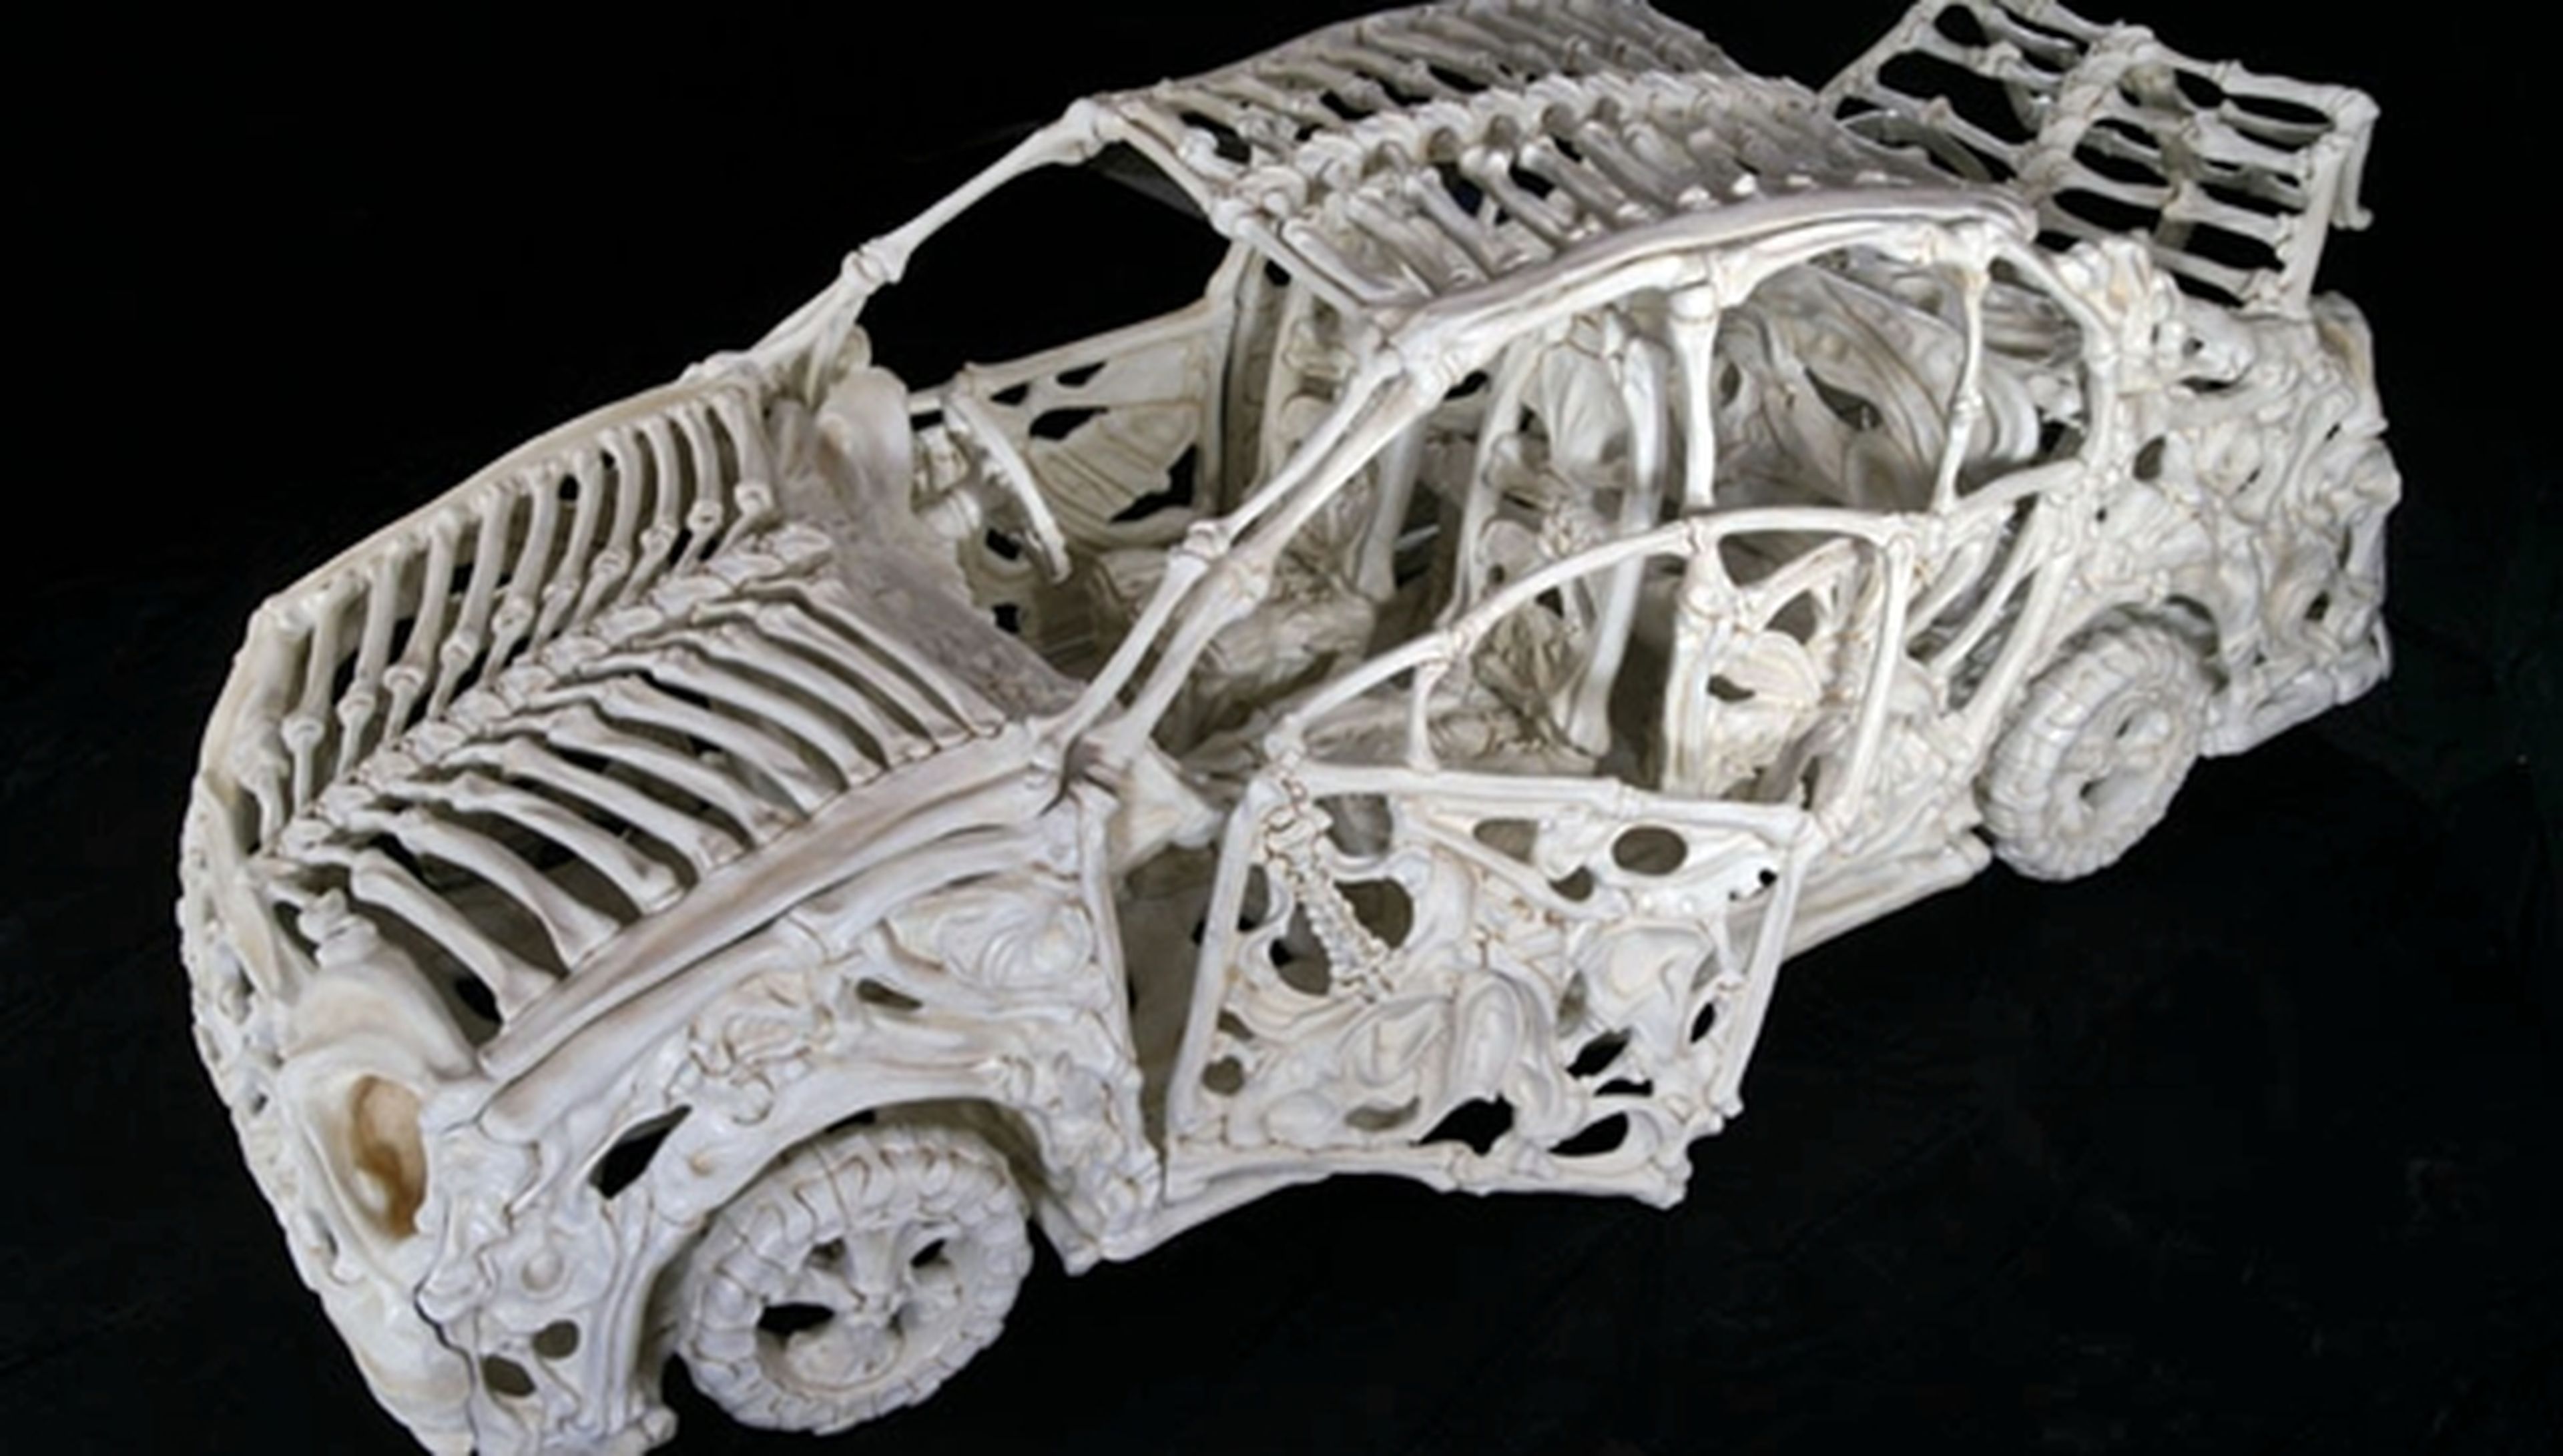 Lo último: coches de huesos, por Jitish Kallat